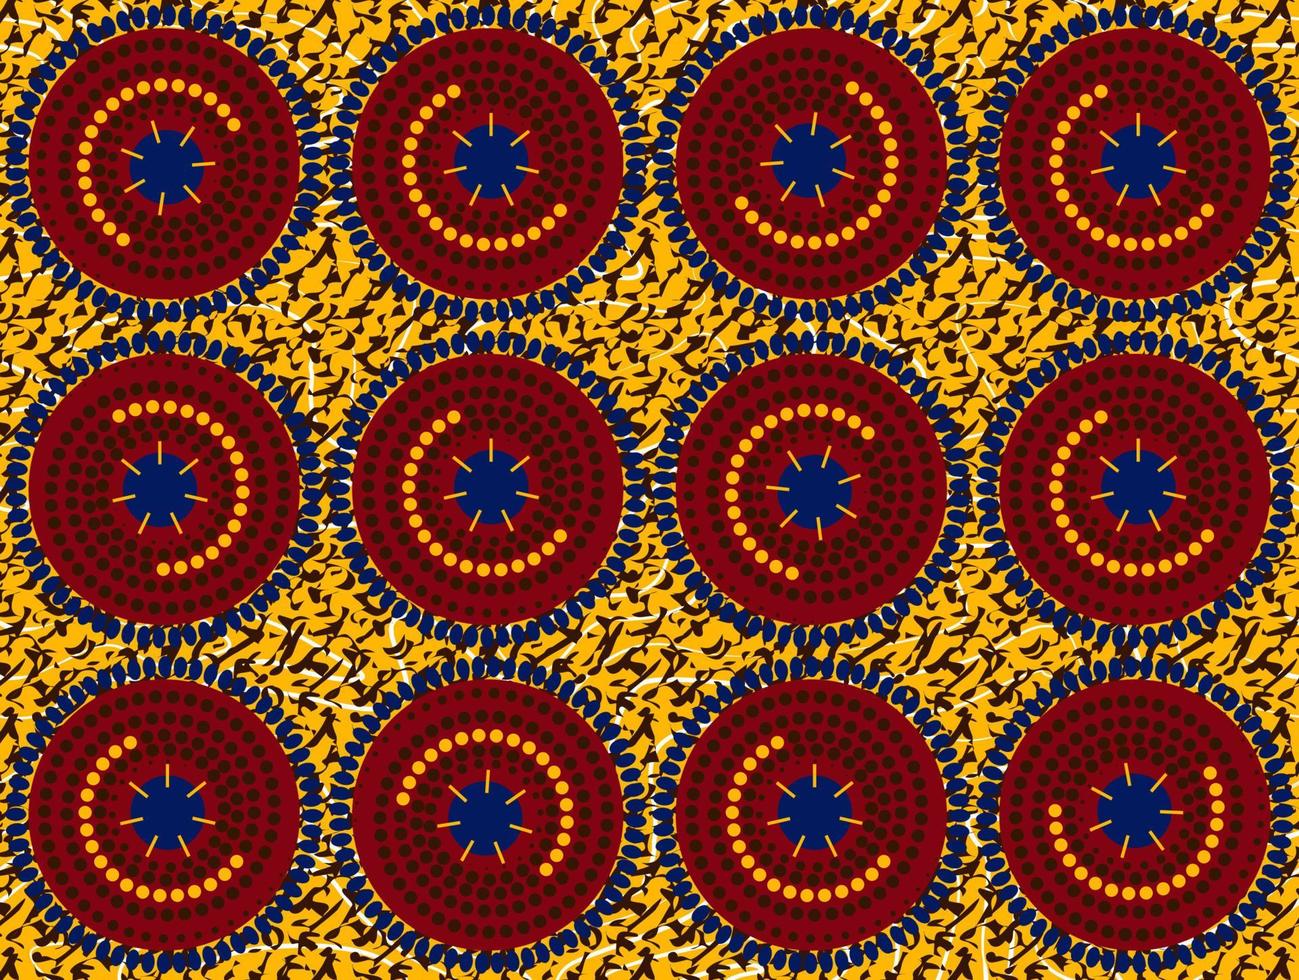 Afrikaanse wax print stof, etnische handgemaakte sieraad voor uw ontwerp, afro etnische bloemen en tribale motieven geometrische elementen. vector textuur, afrika gestreepte naadloze textiel ankara mode stijl